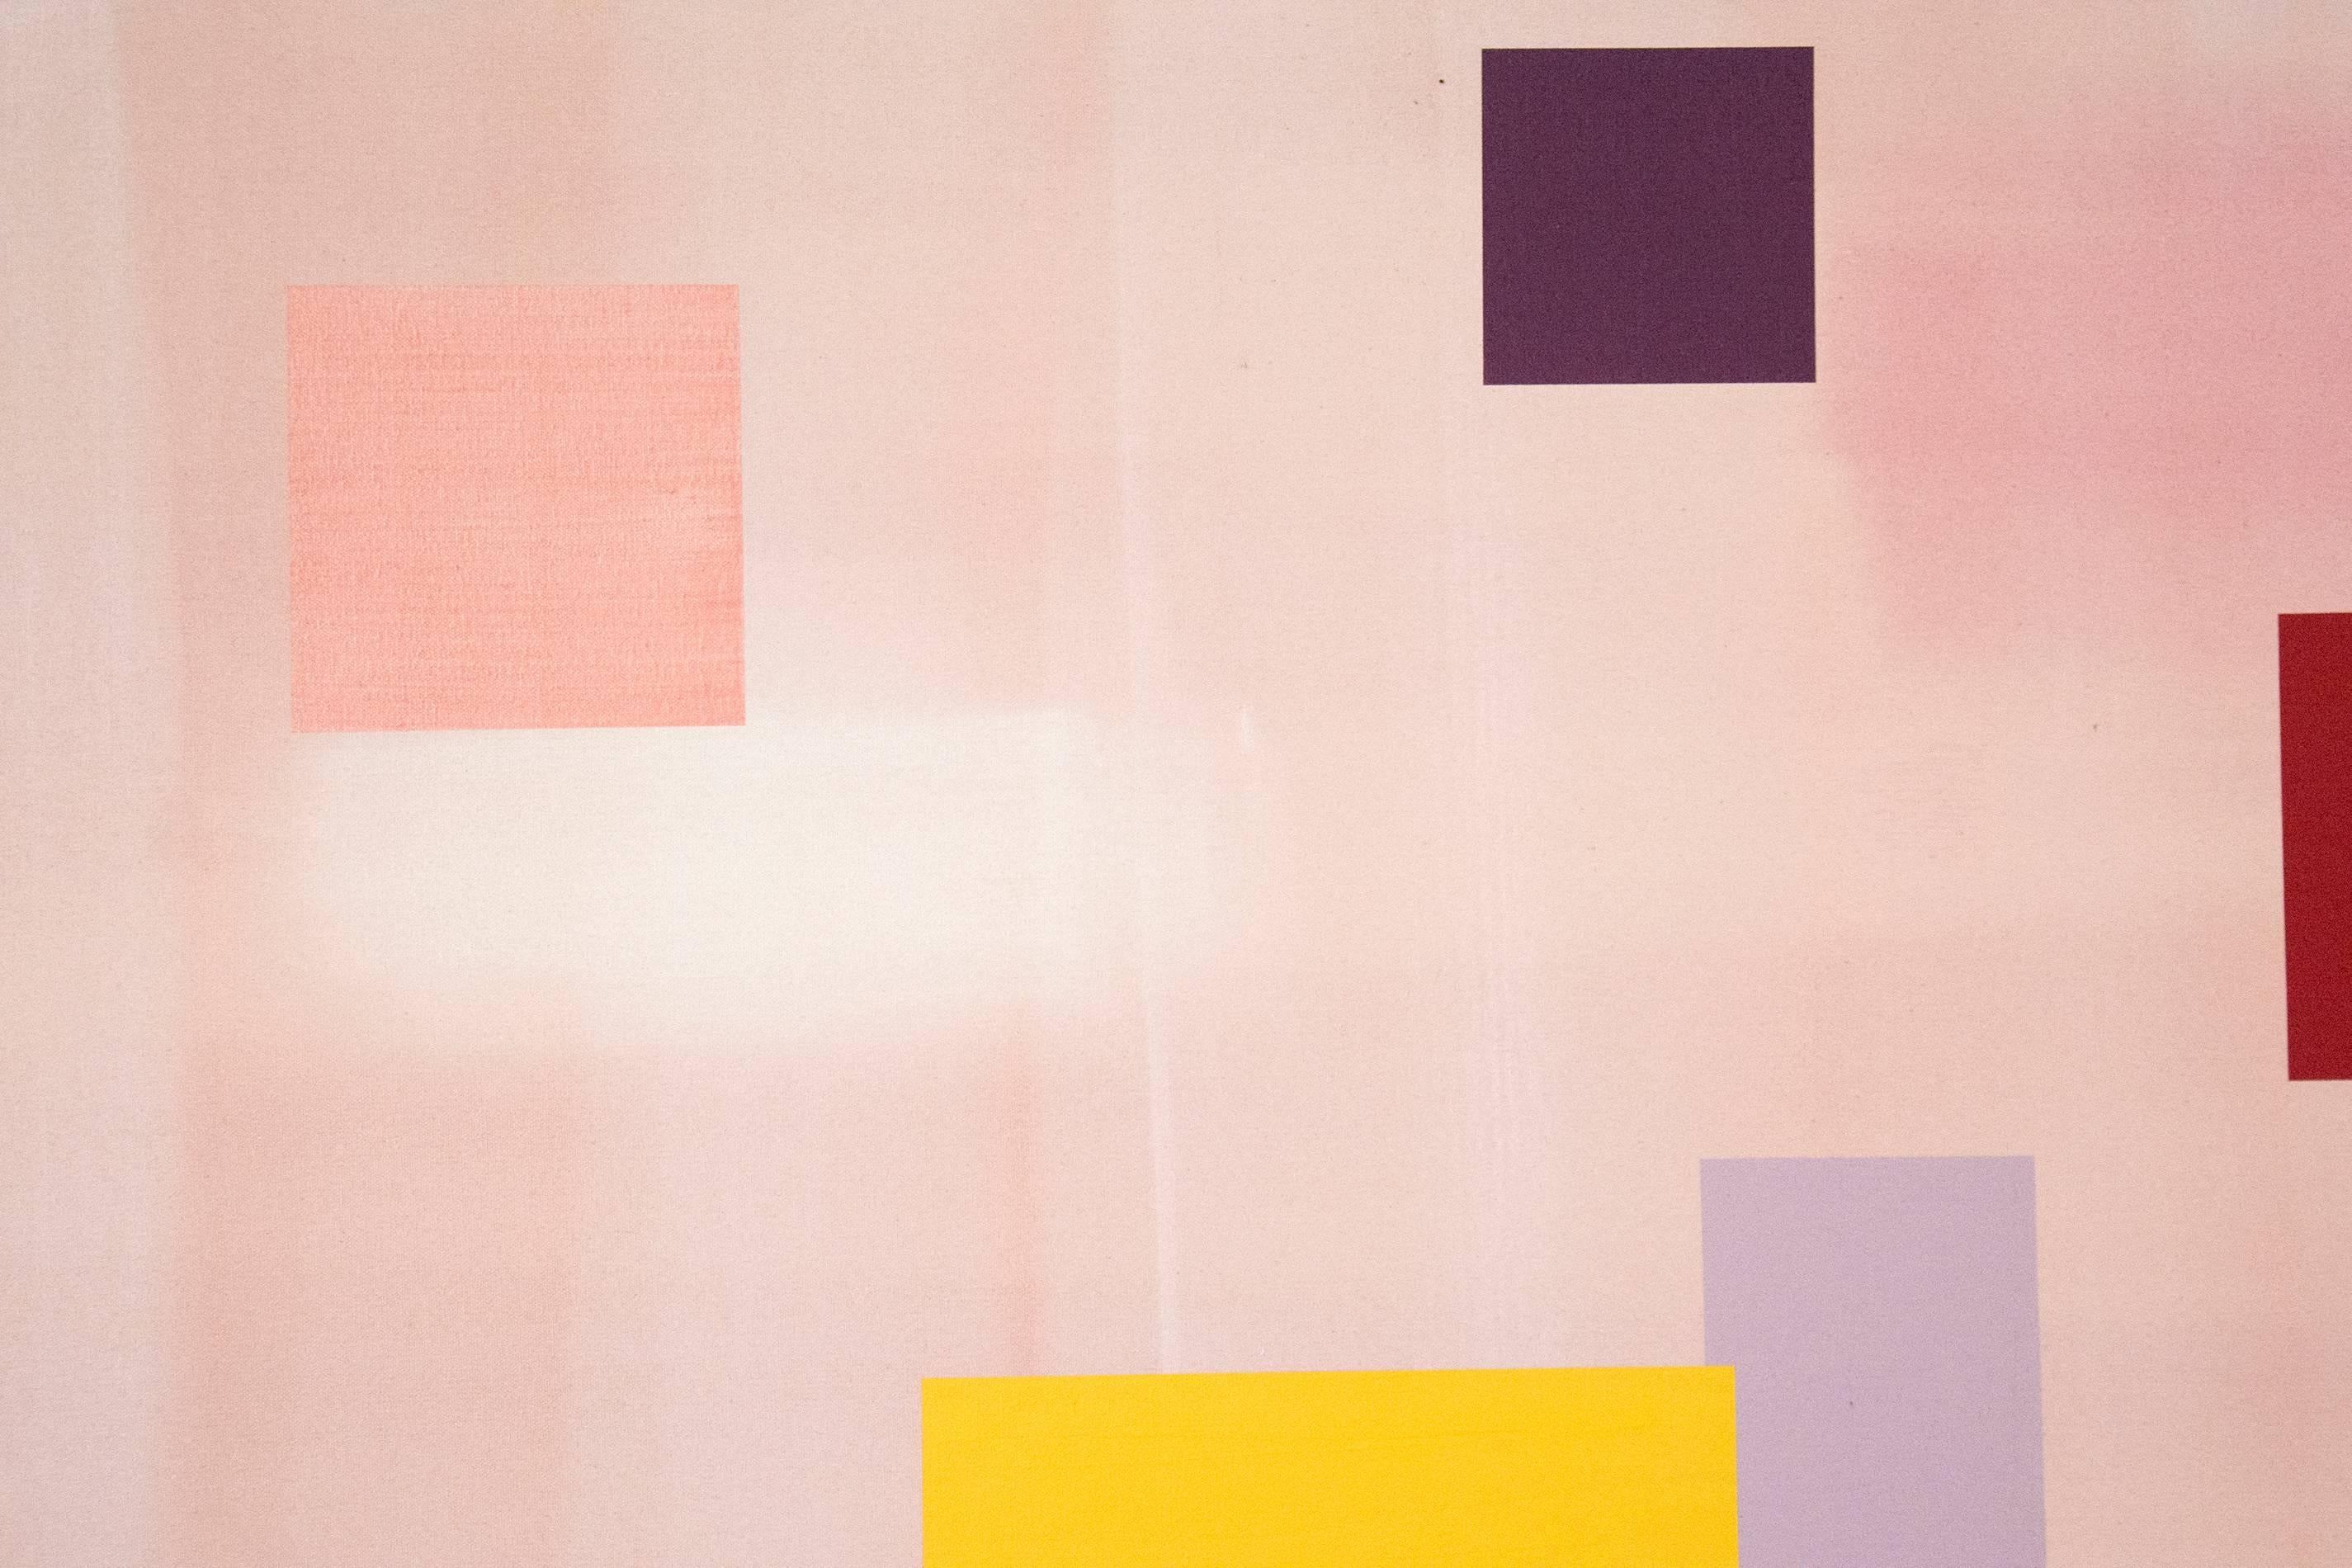 Float - élégants carrés flottants rose doux avec des touches jaunes et marron - Contemporain Painting par Milly Ristvedt